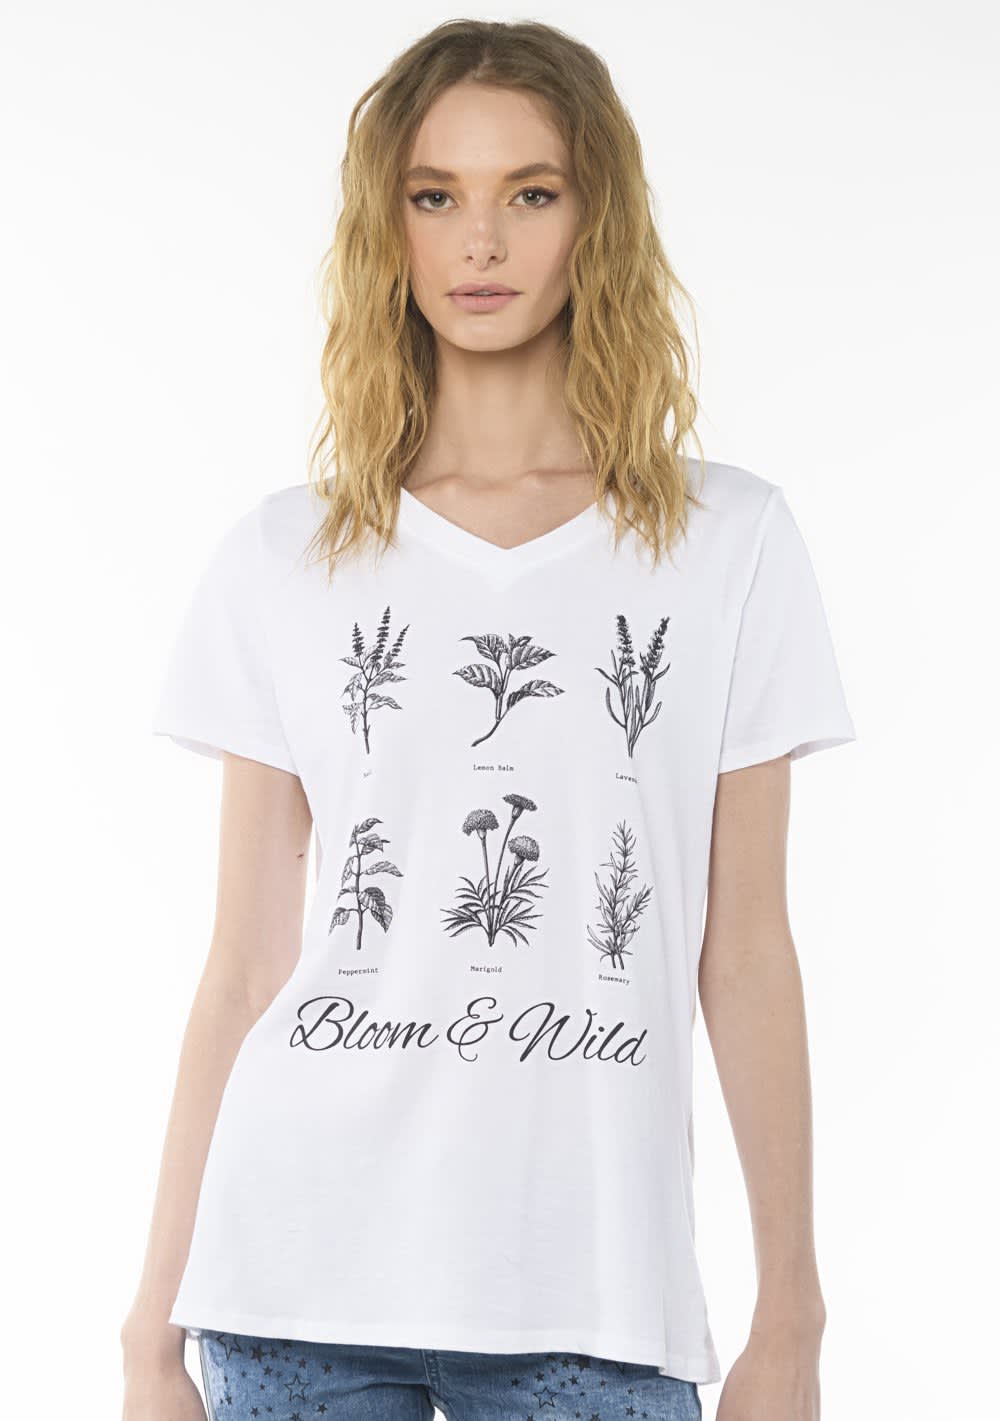 Bloom Tshirt. Talla L [2103]